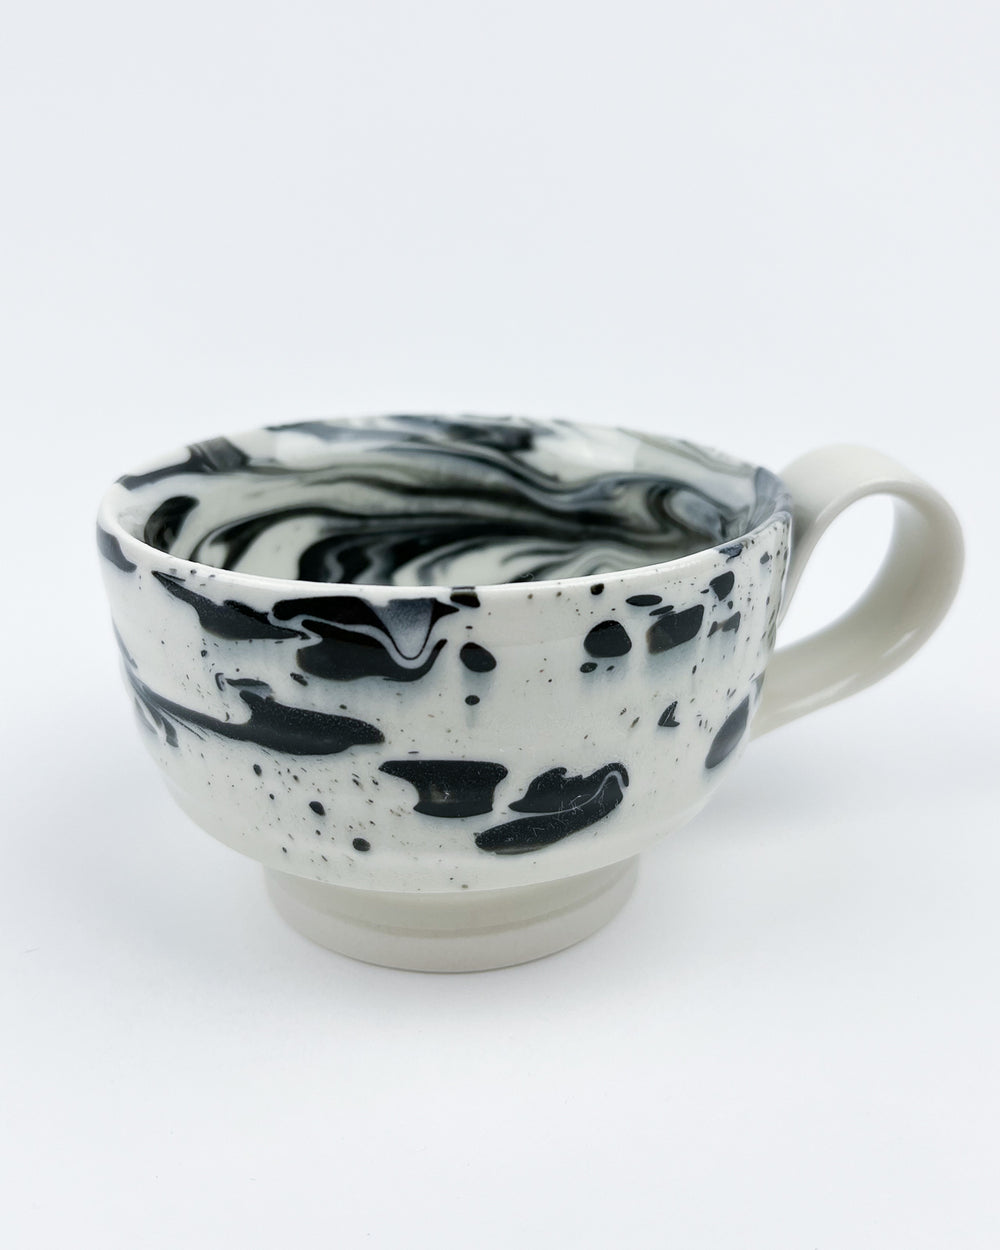 8oz Black and White Marbleware Mug